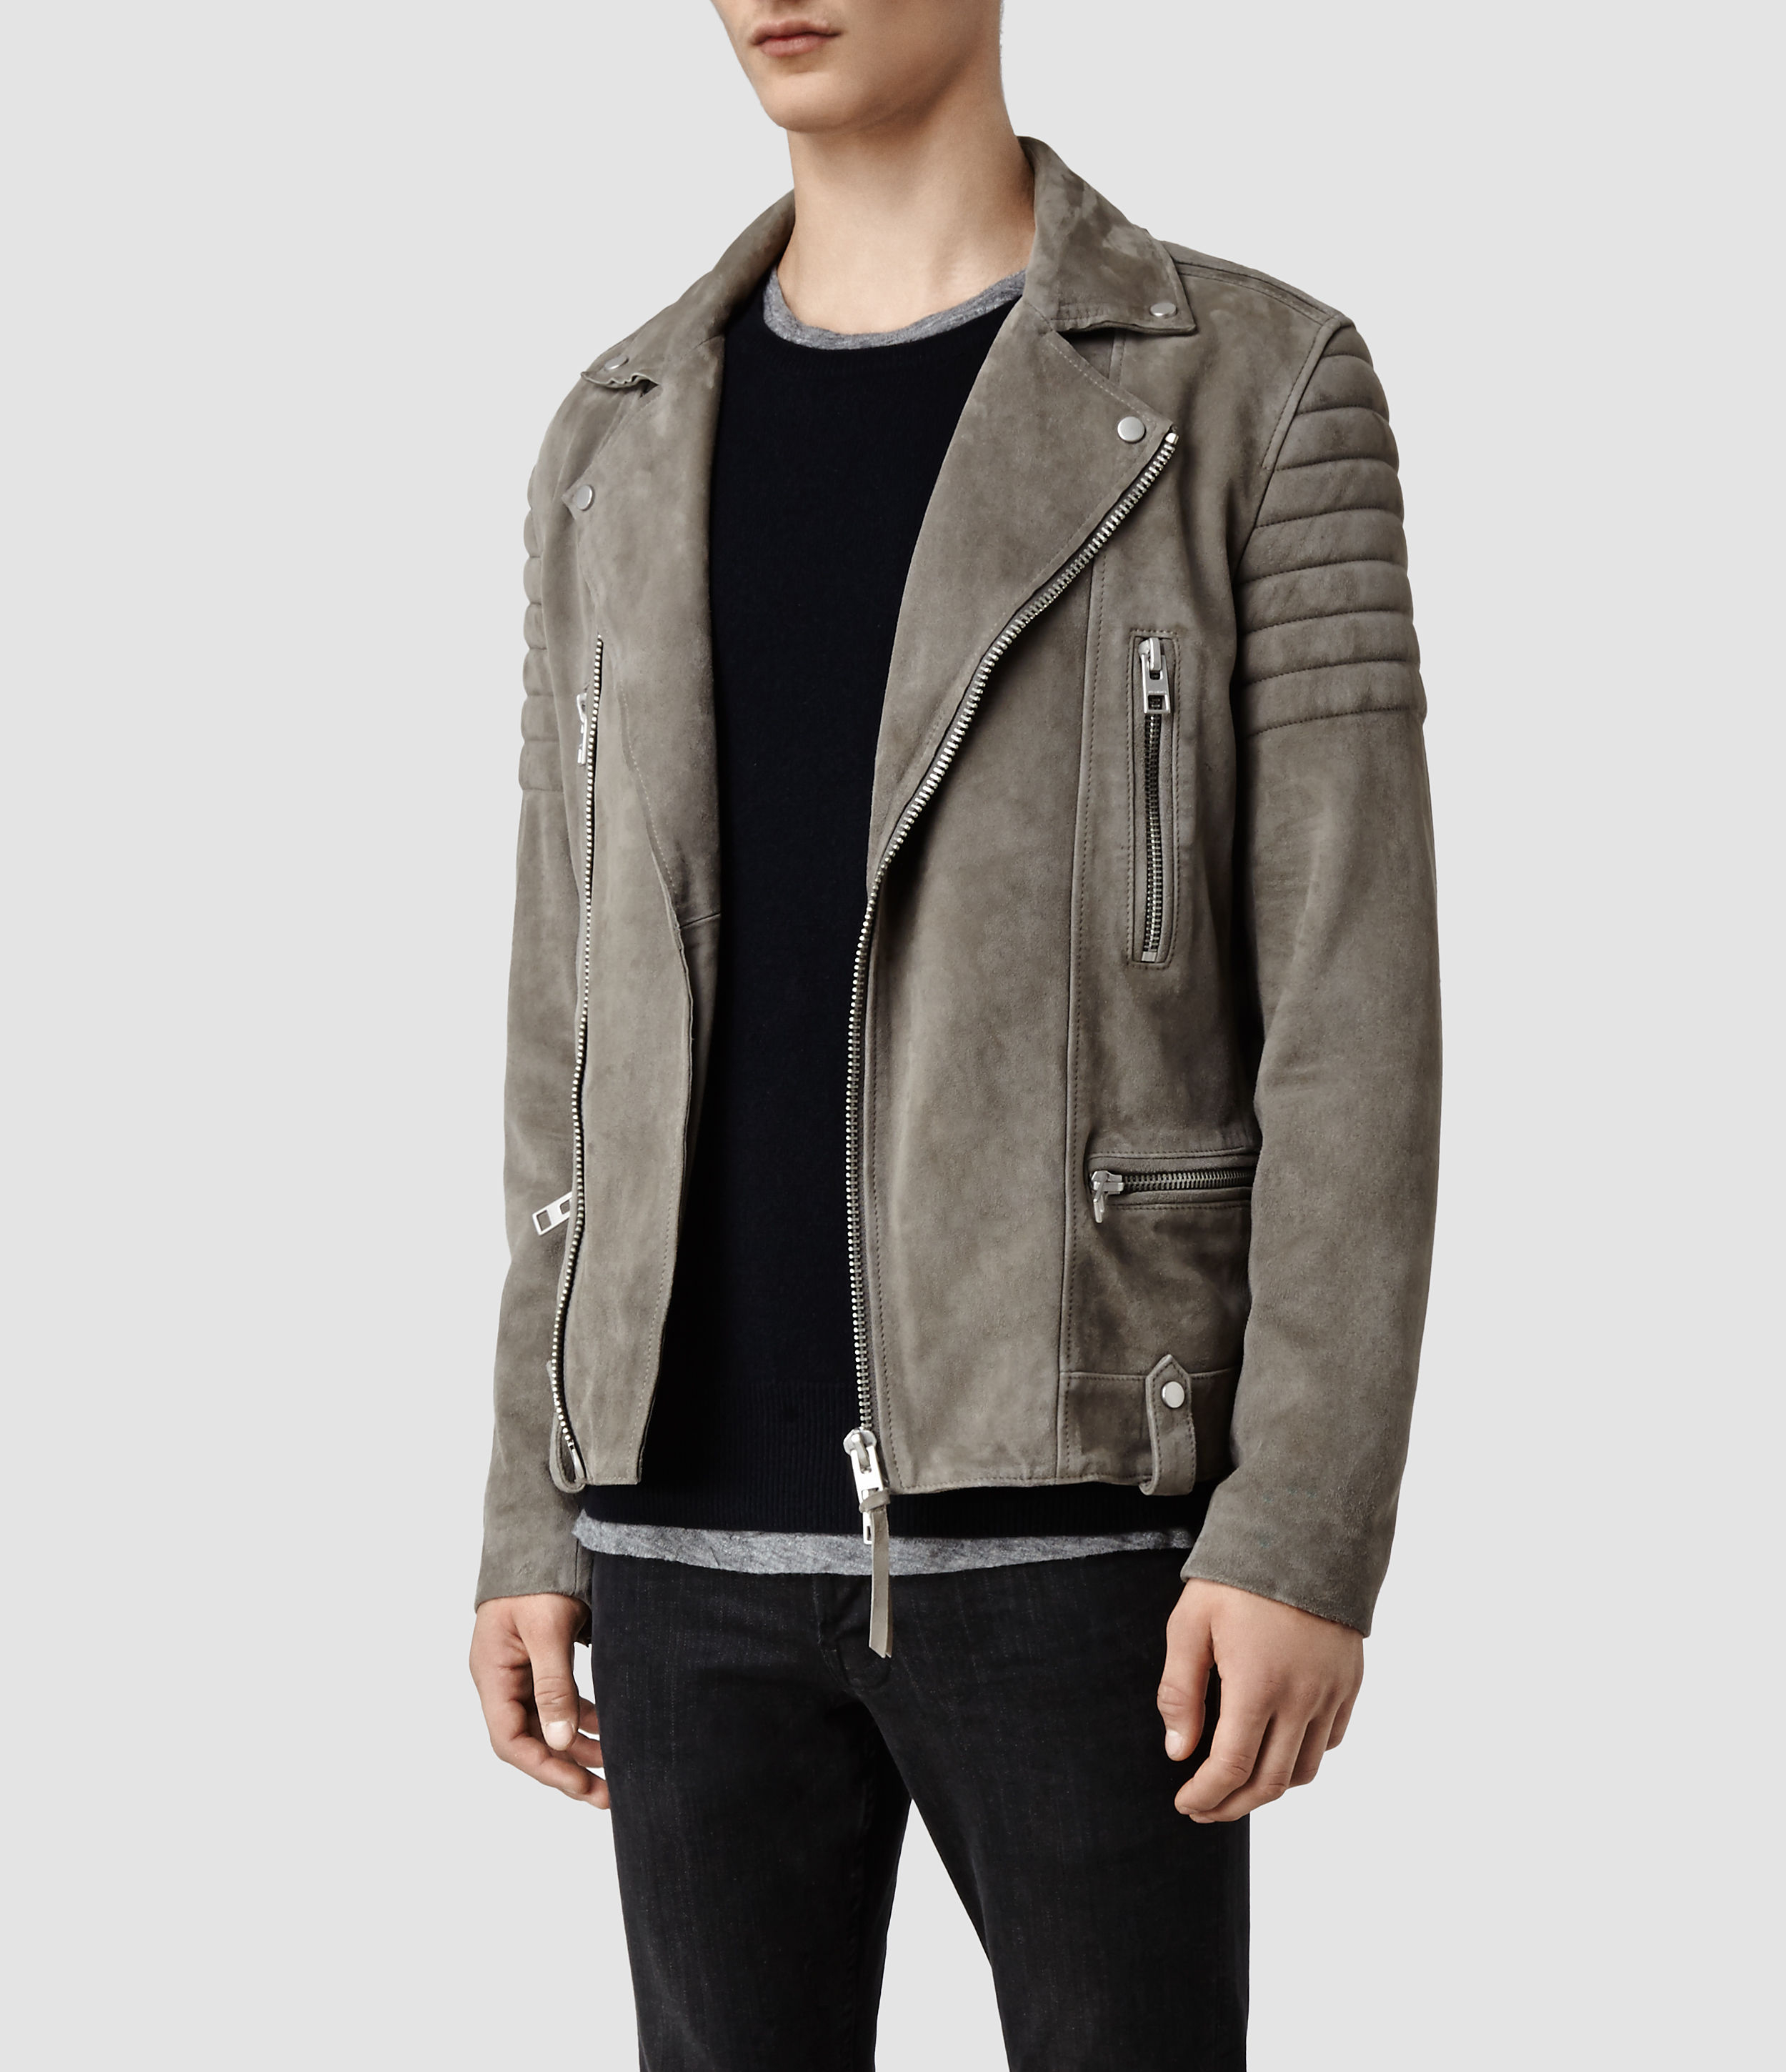 AllSaints Murphy Leather Biker Jacket in Gray for Men - Lyst